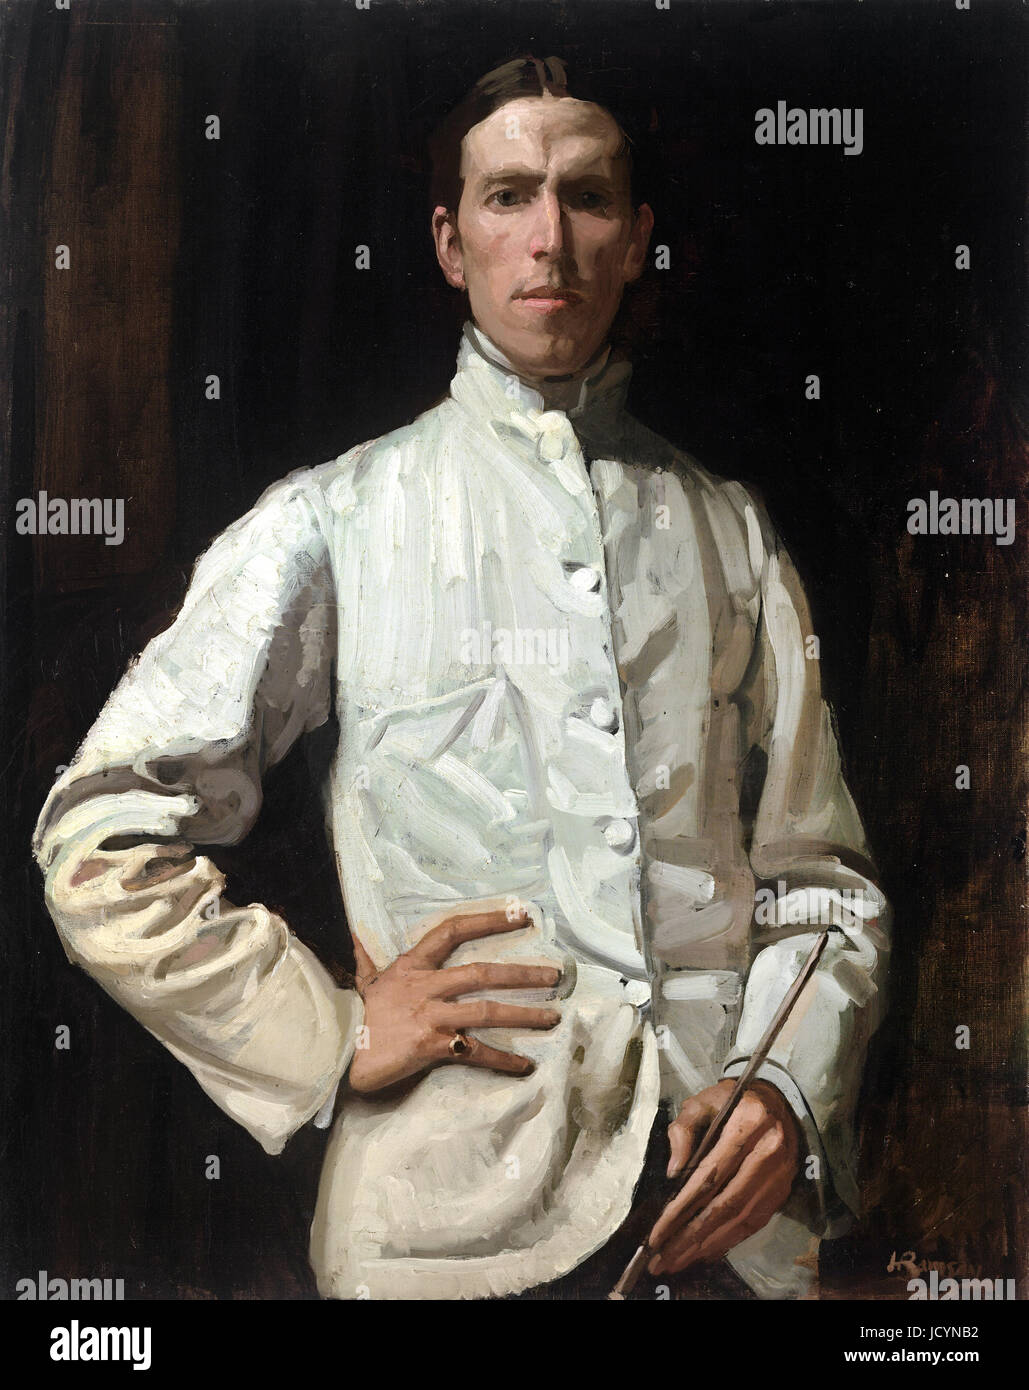 Hugh Ramsay, Autoportrait en veste blanche 1901-1902 Huile sur toile. National Gallery of Victoria, Australie. Banque D'Images